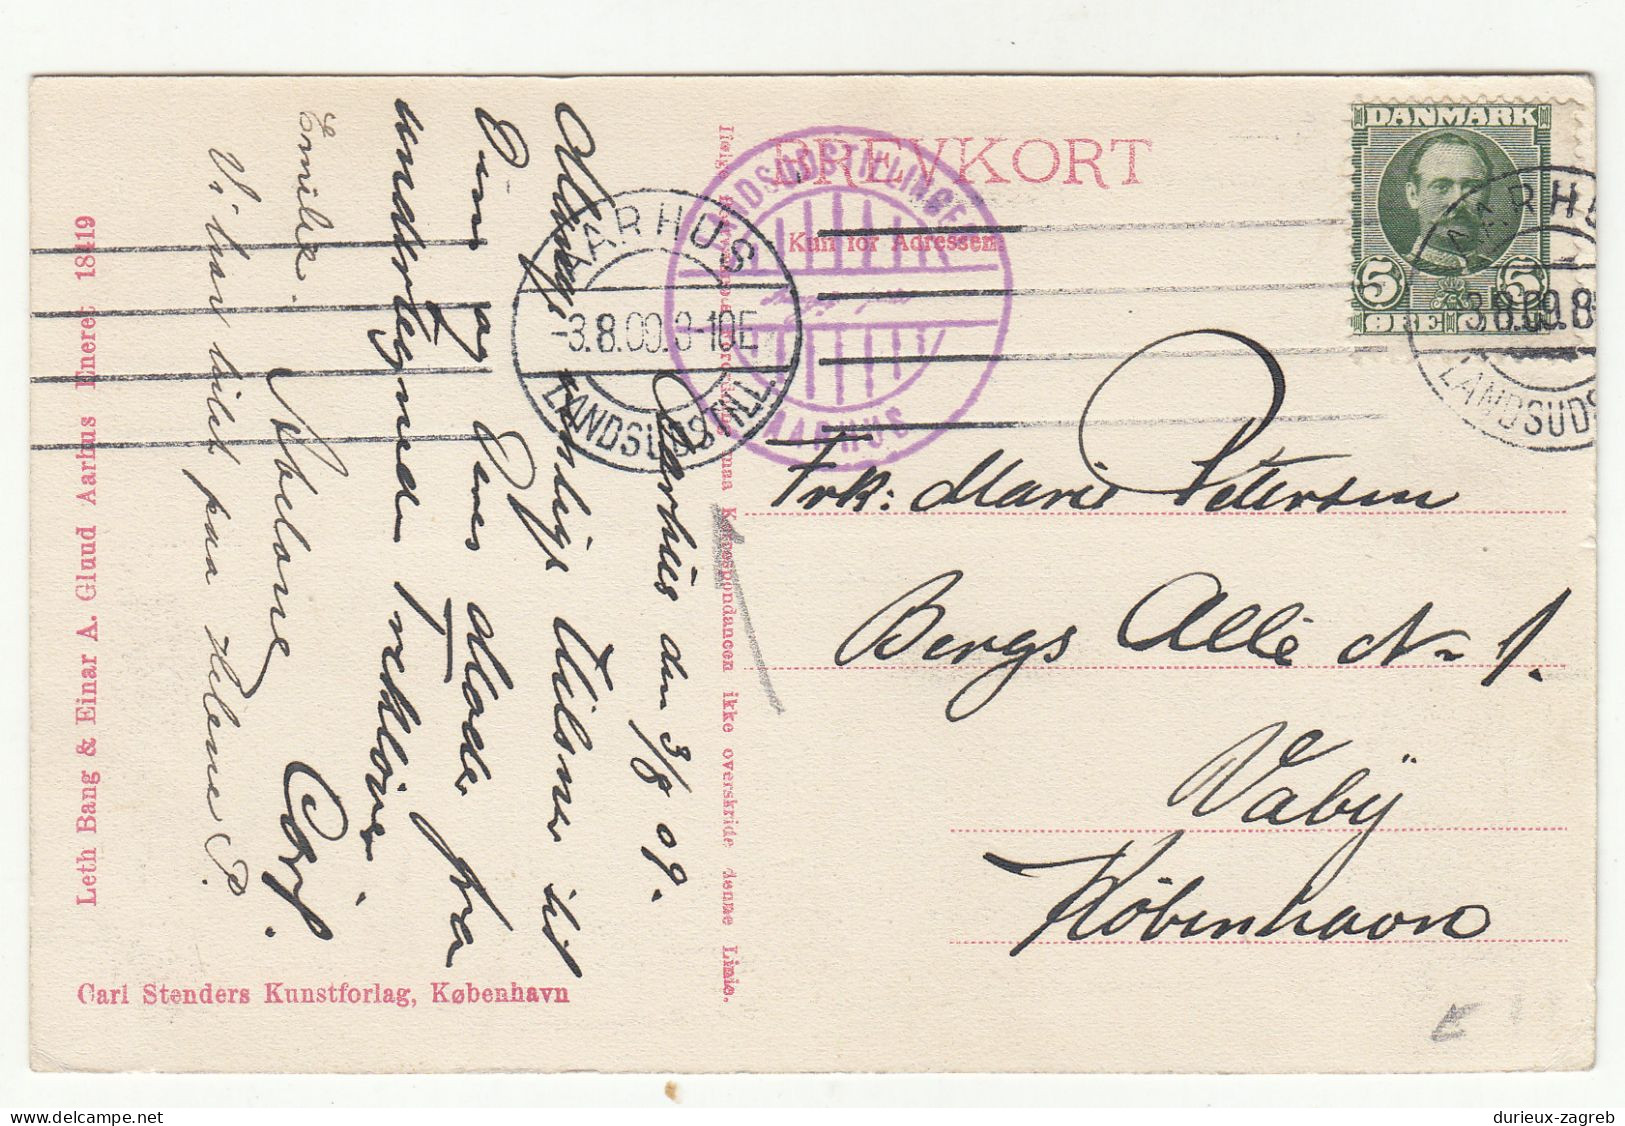 Landsudstillingen Aarhus Old Postcard Posted 1909 B240301 - Danemark